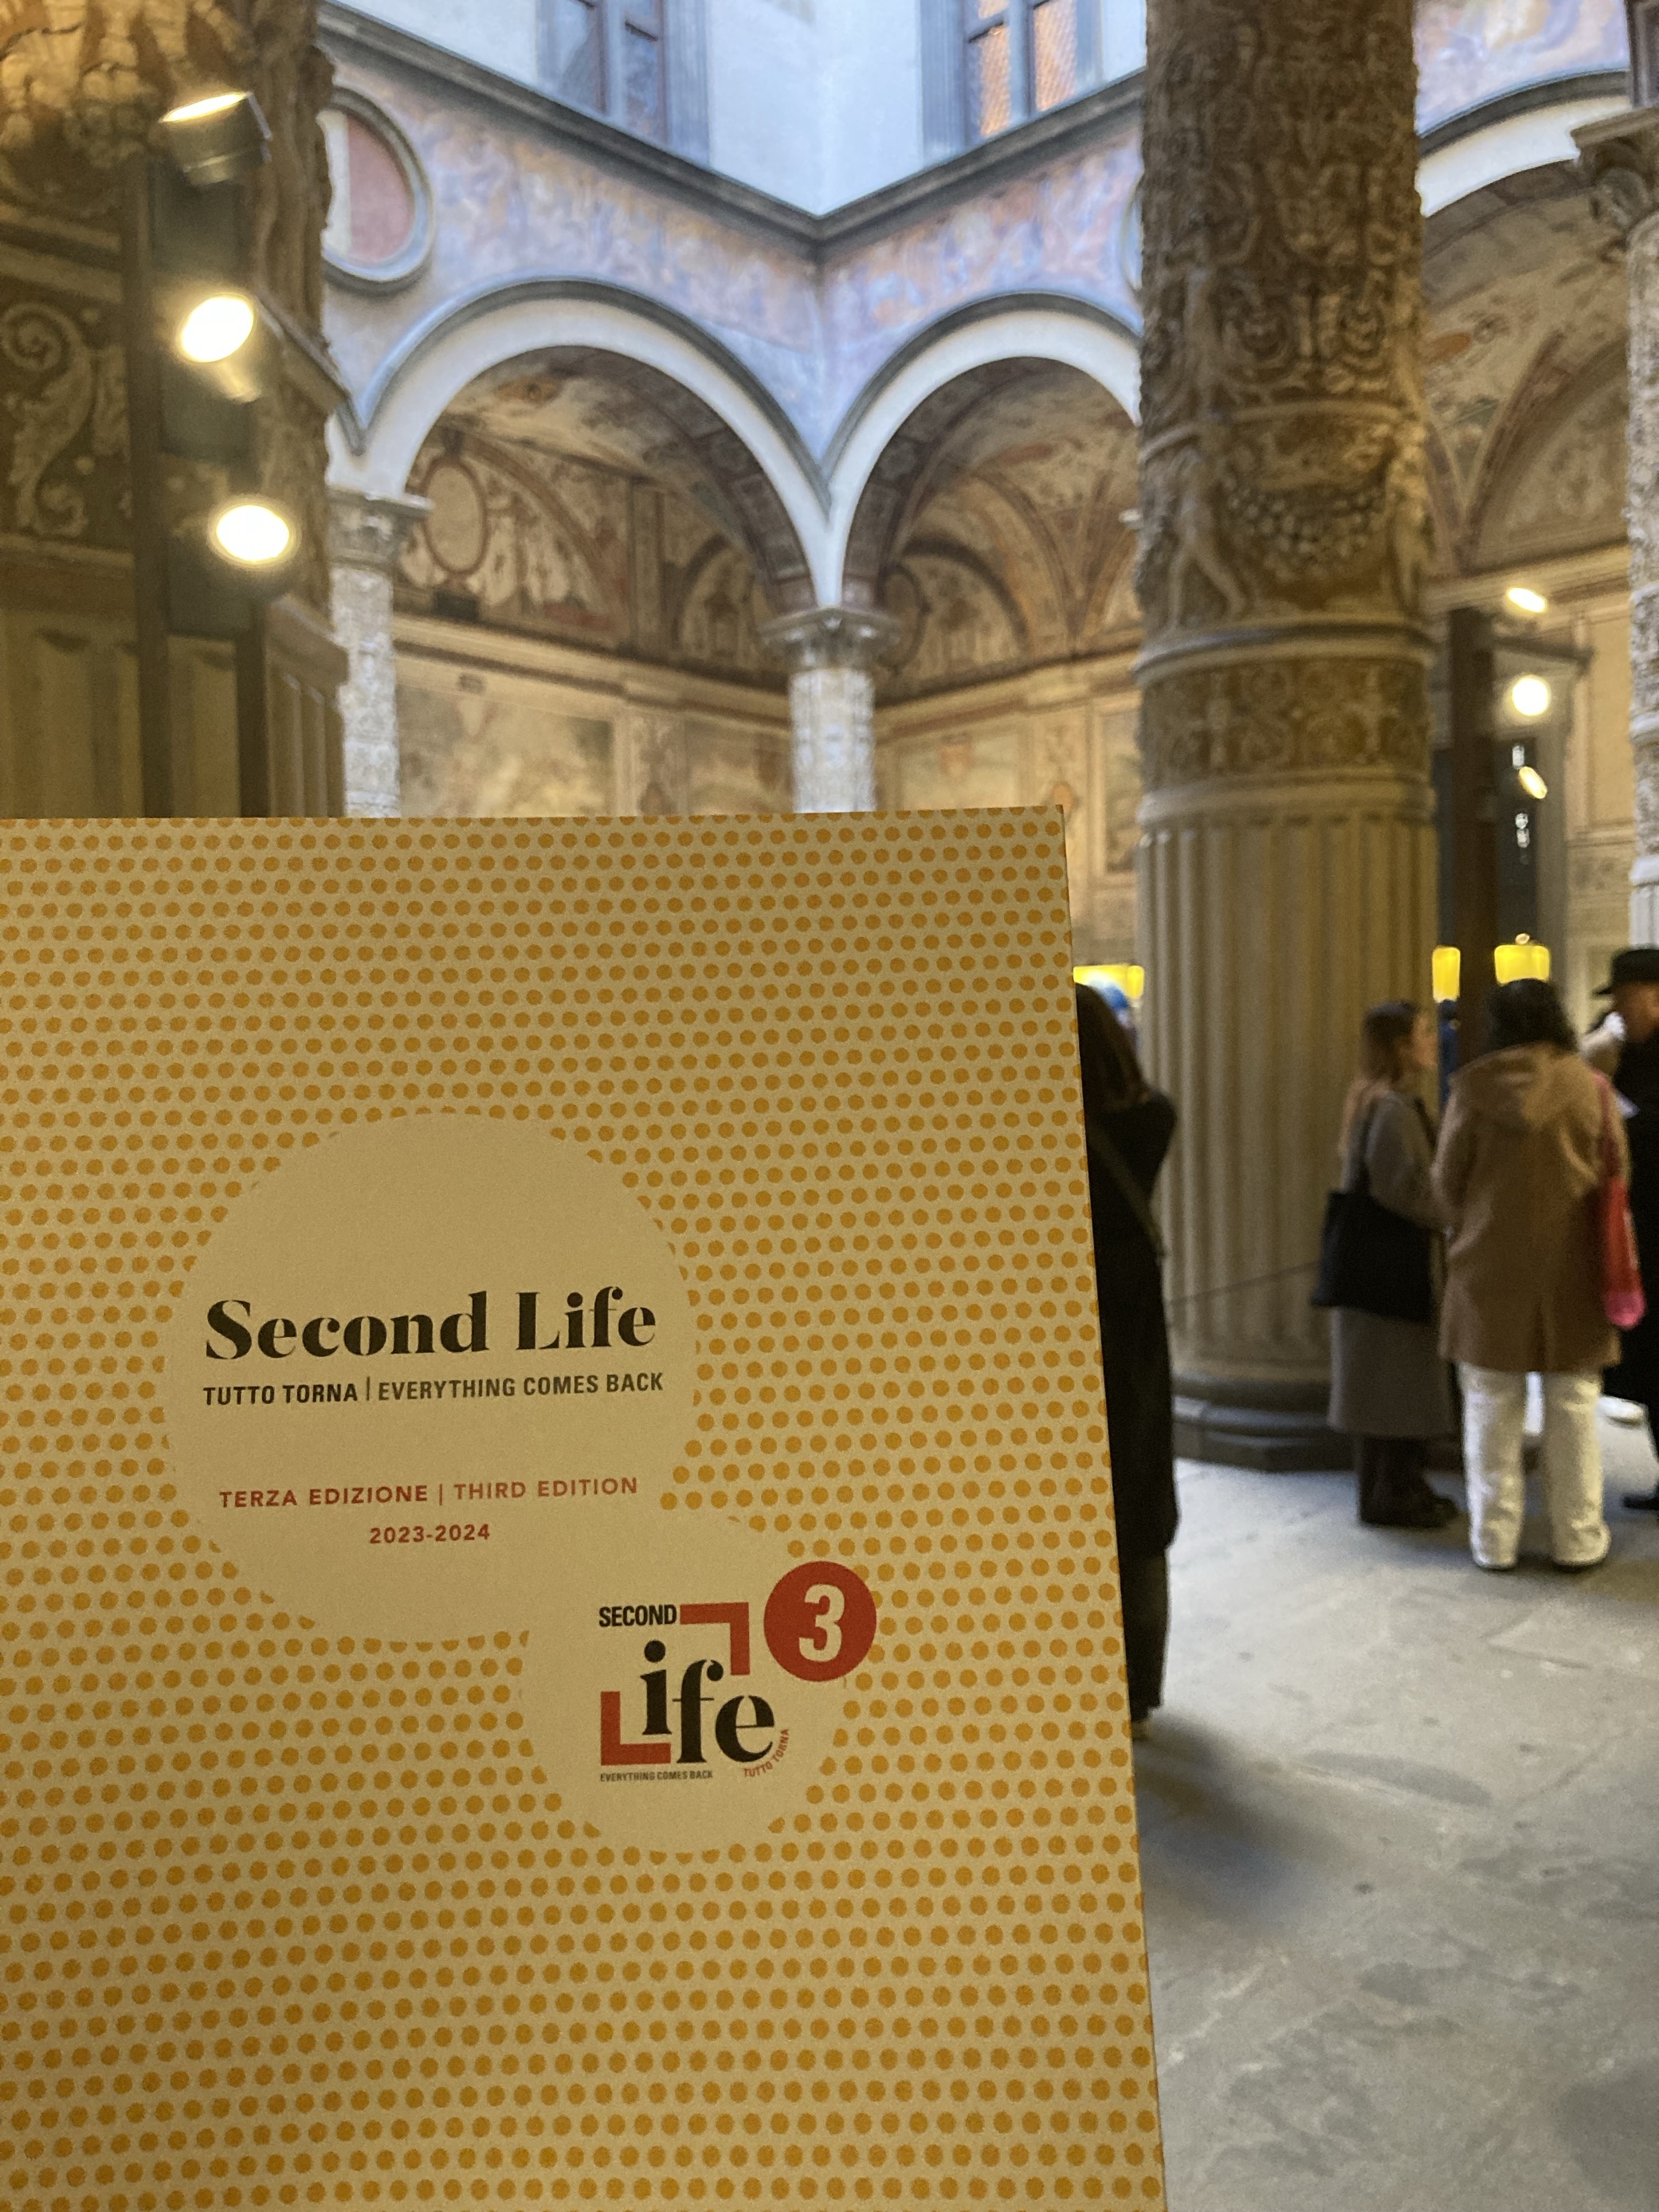 Fondazione MAIRE è partner della terza edizione di “Second Life, tutto torna”